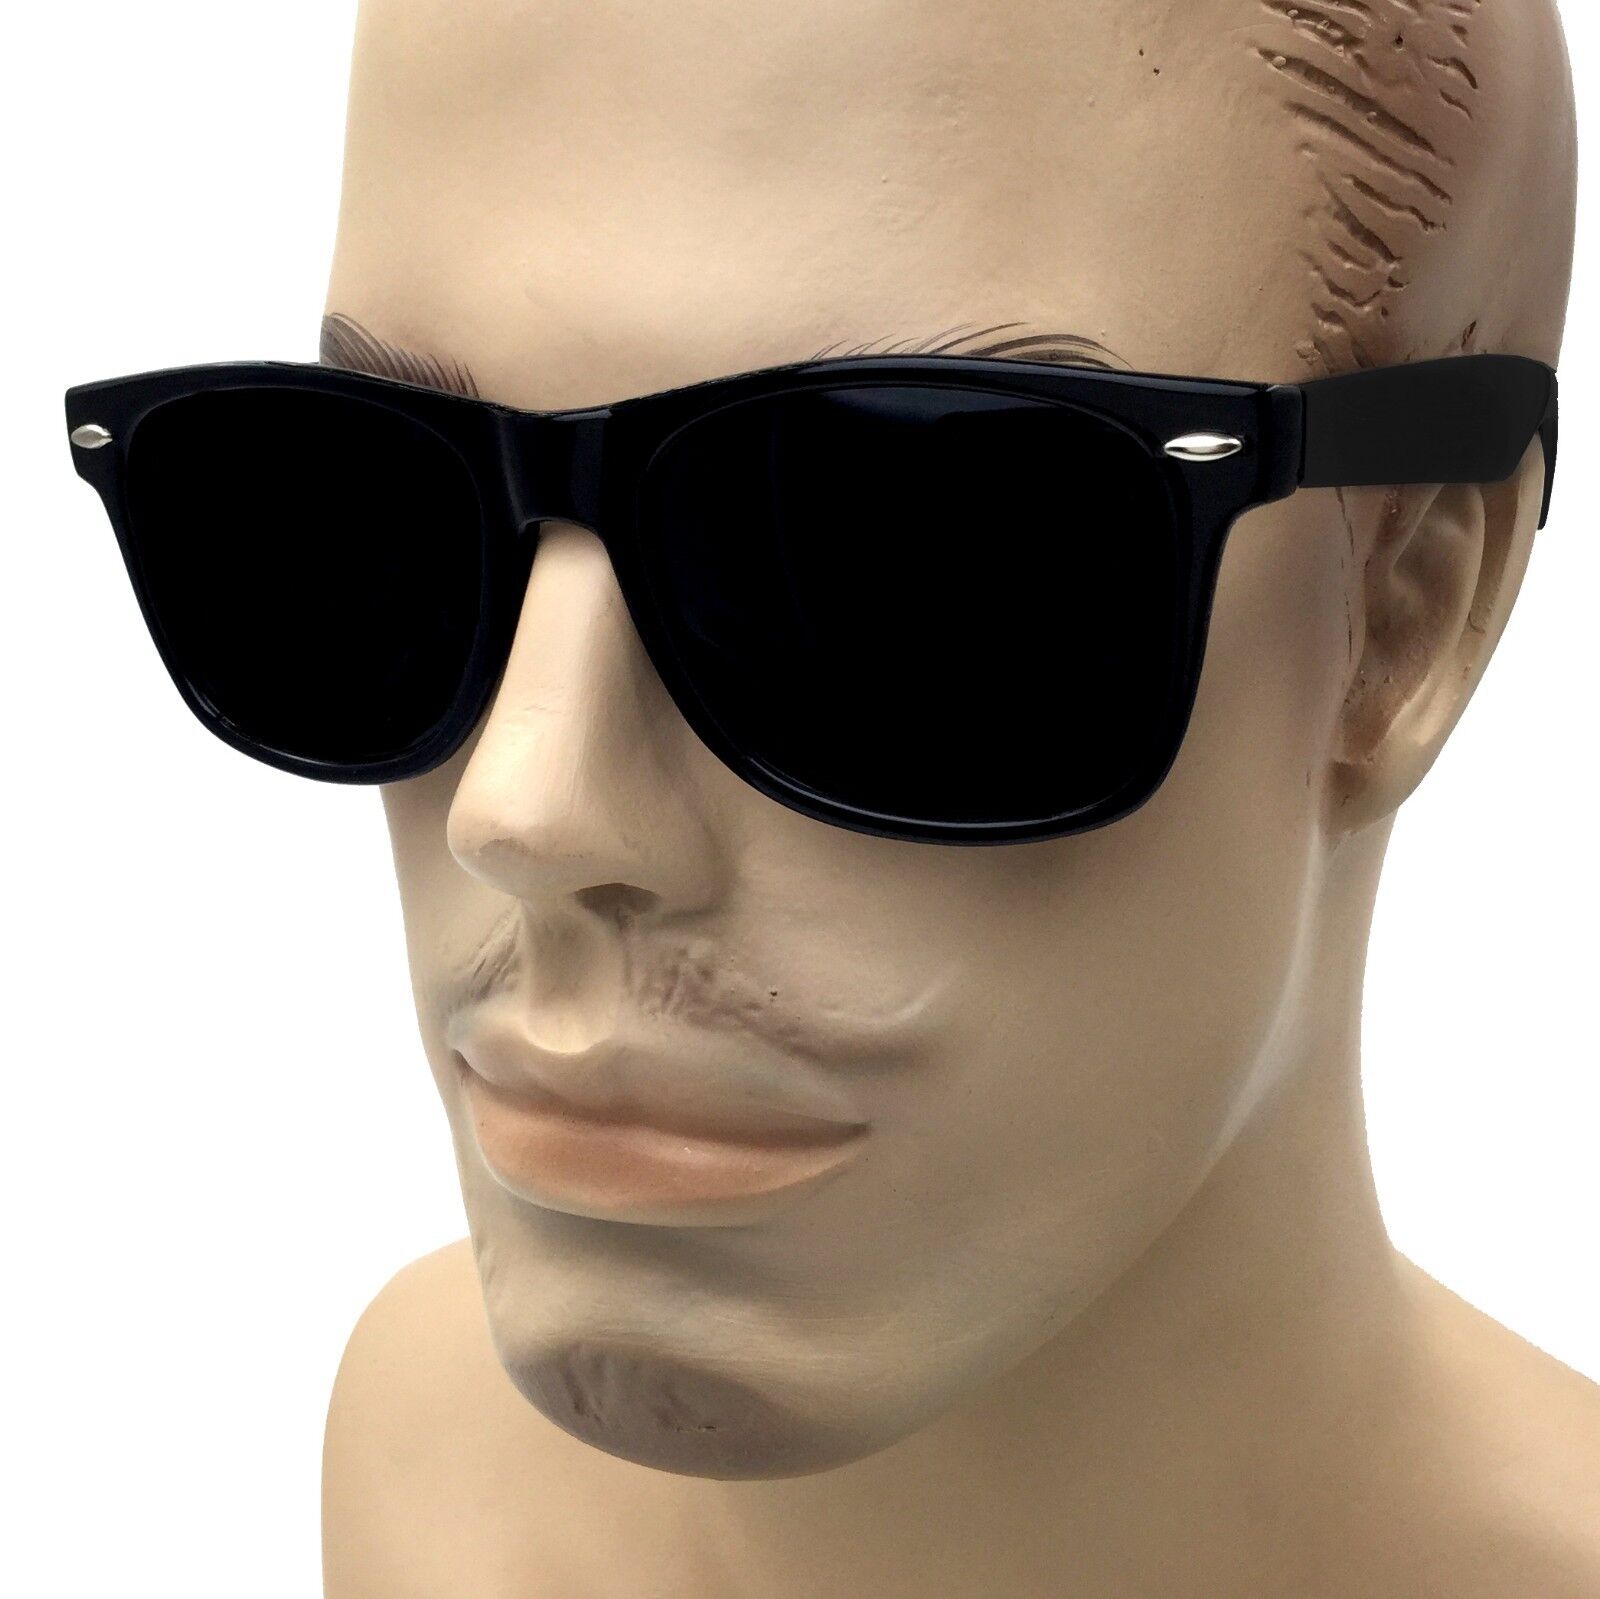 Buy Black Sunglasses for Men by Ray-Ban Online | Ajio.com-bdsngoinhaviet.com.vn